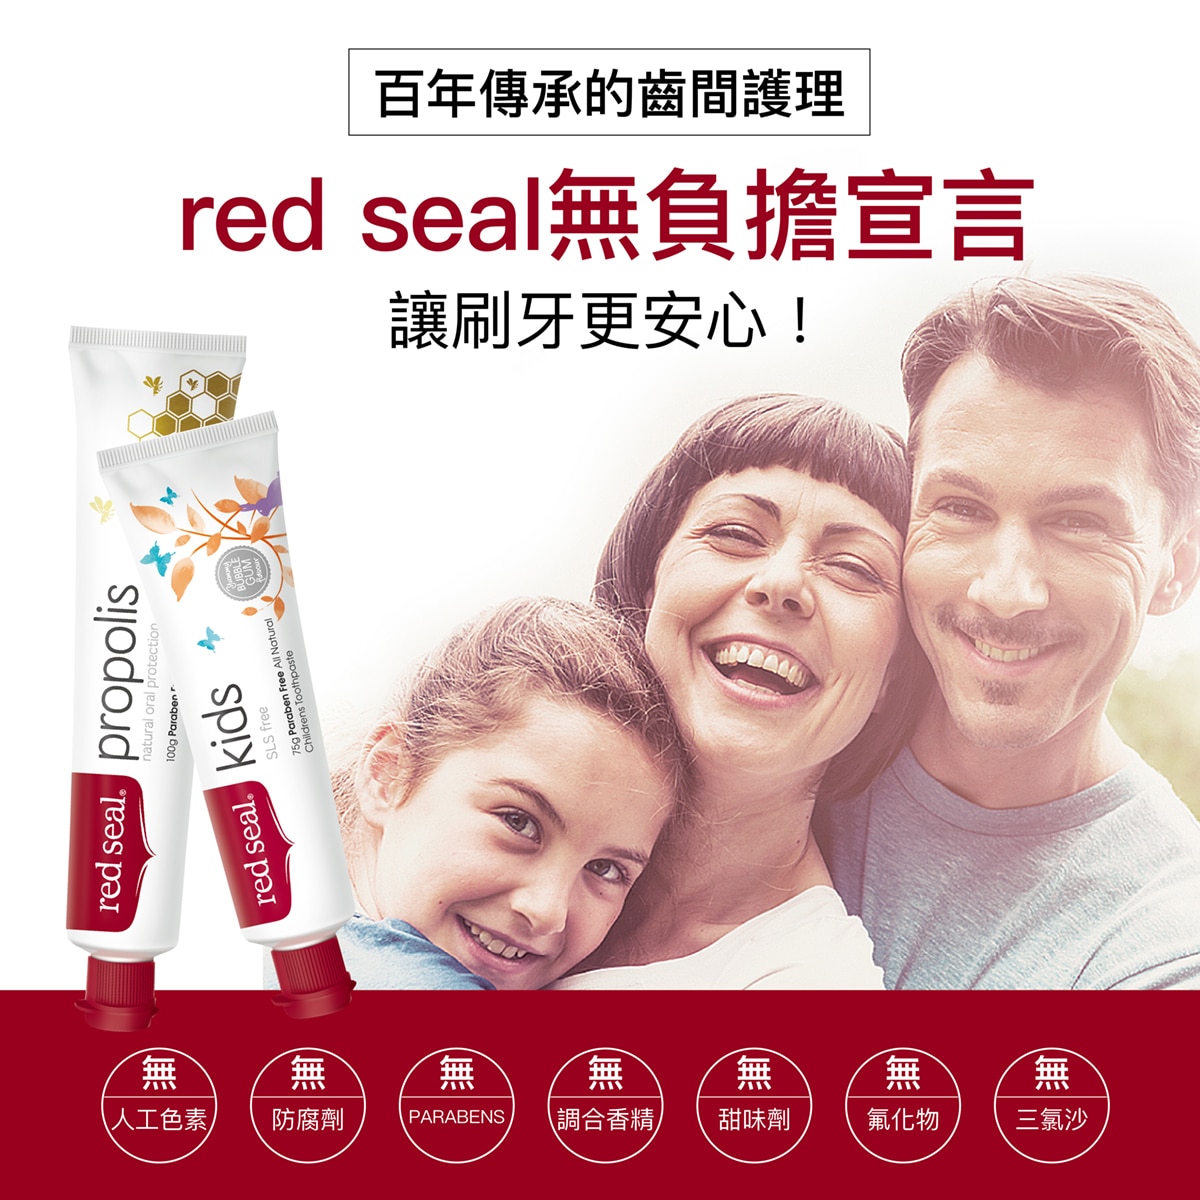 Red Seal 紅印無氟兒童牙膏，無人工色素、防腐劑、PARABENS、調和香精、甜味劑、氟化物以及三氯沙。